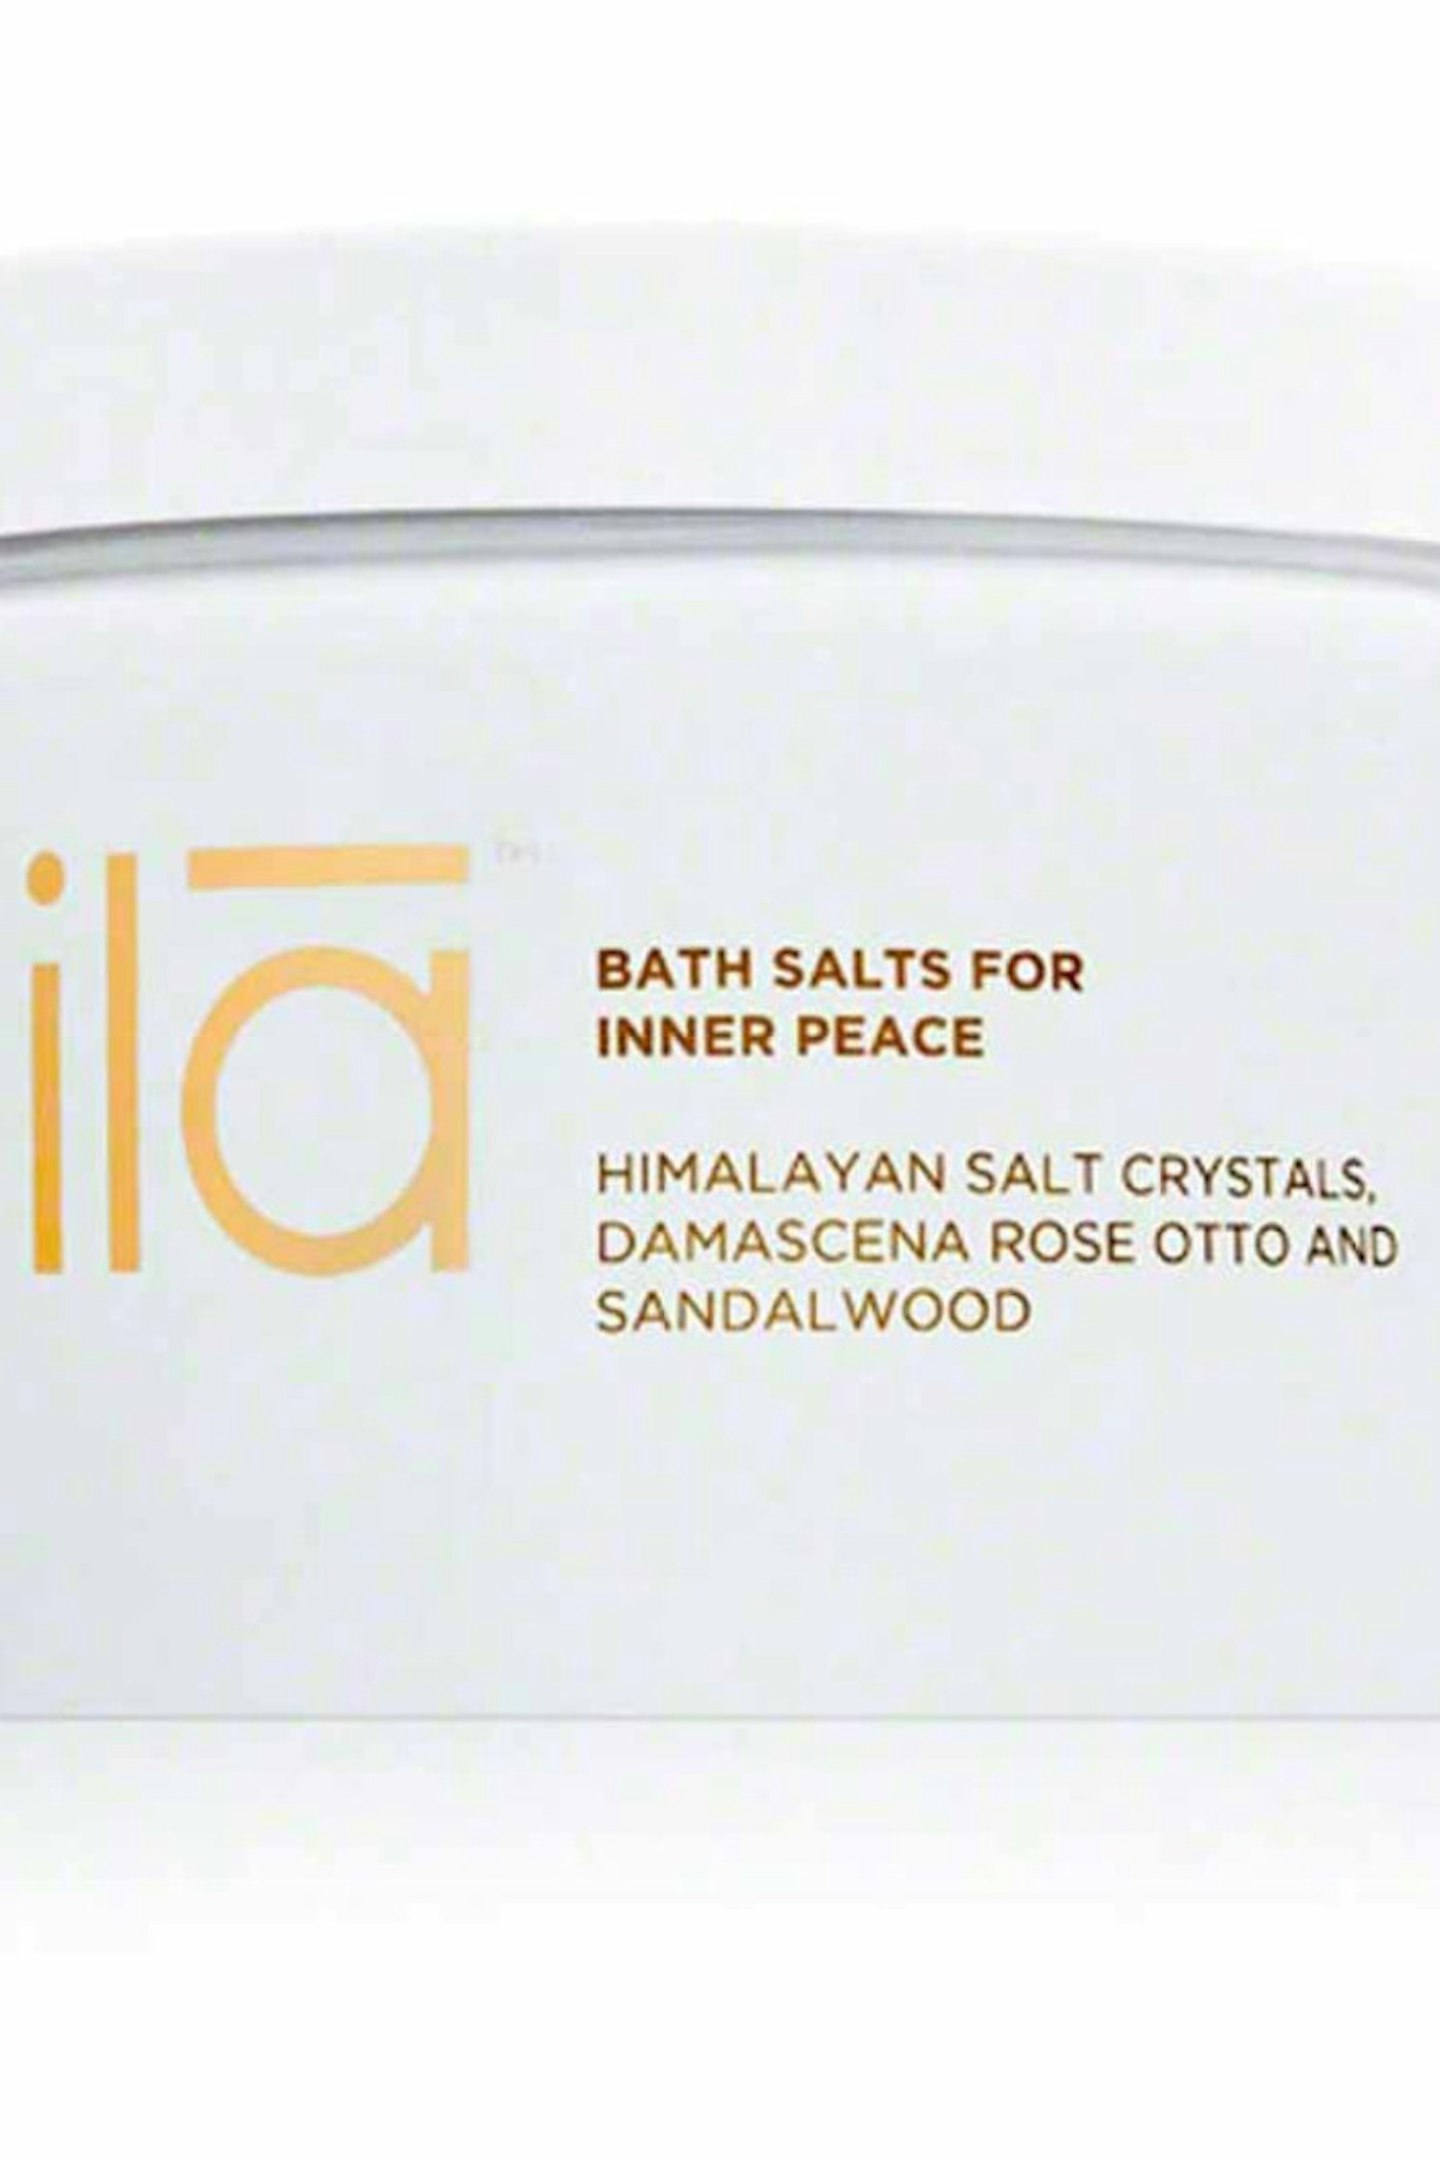 6. Ila Bath Salts For Inner Peace, £49.00